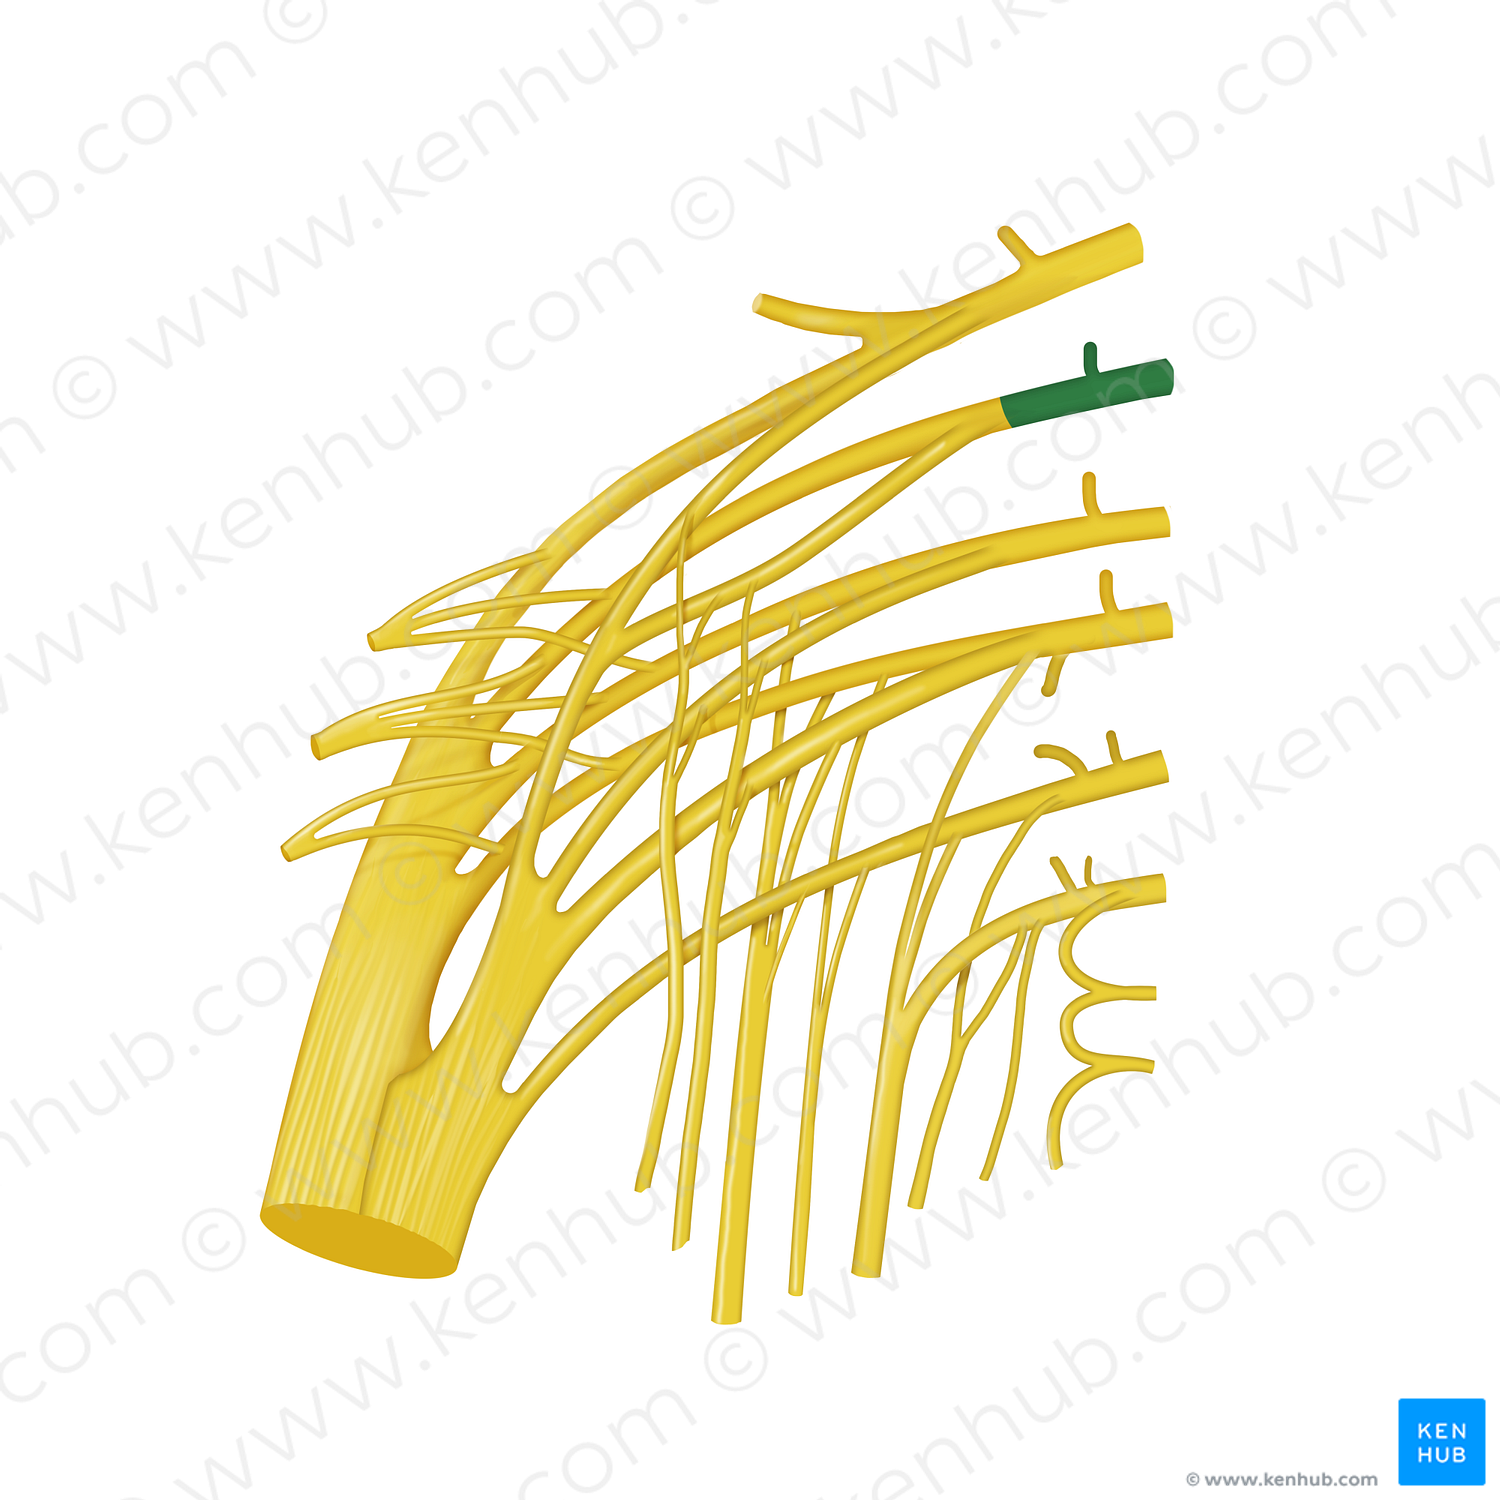 Spinal nerve L5 (#12824)